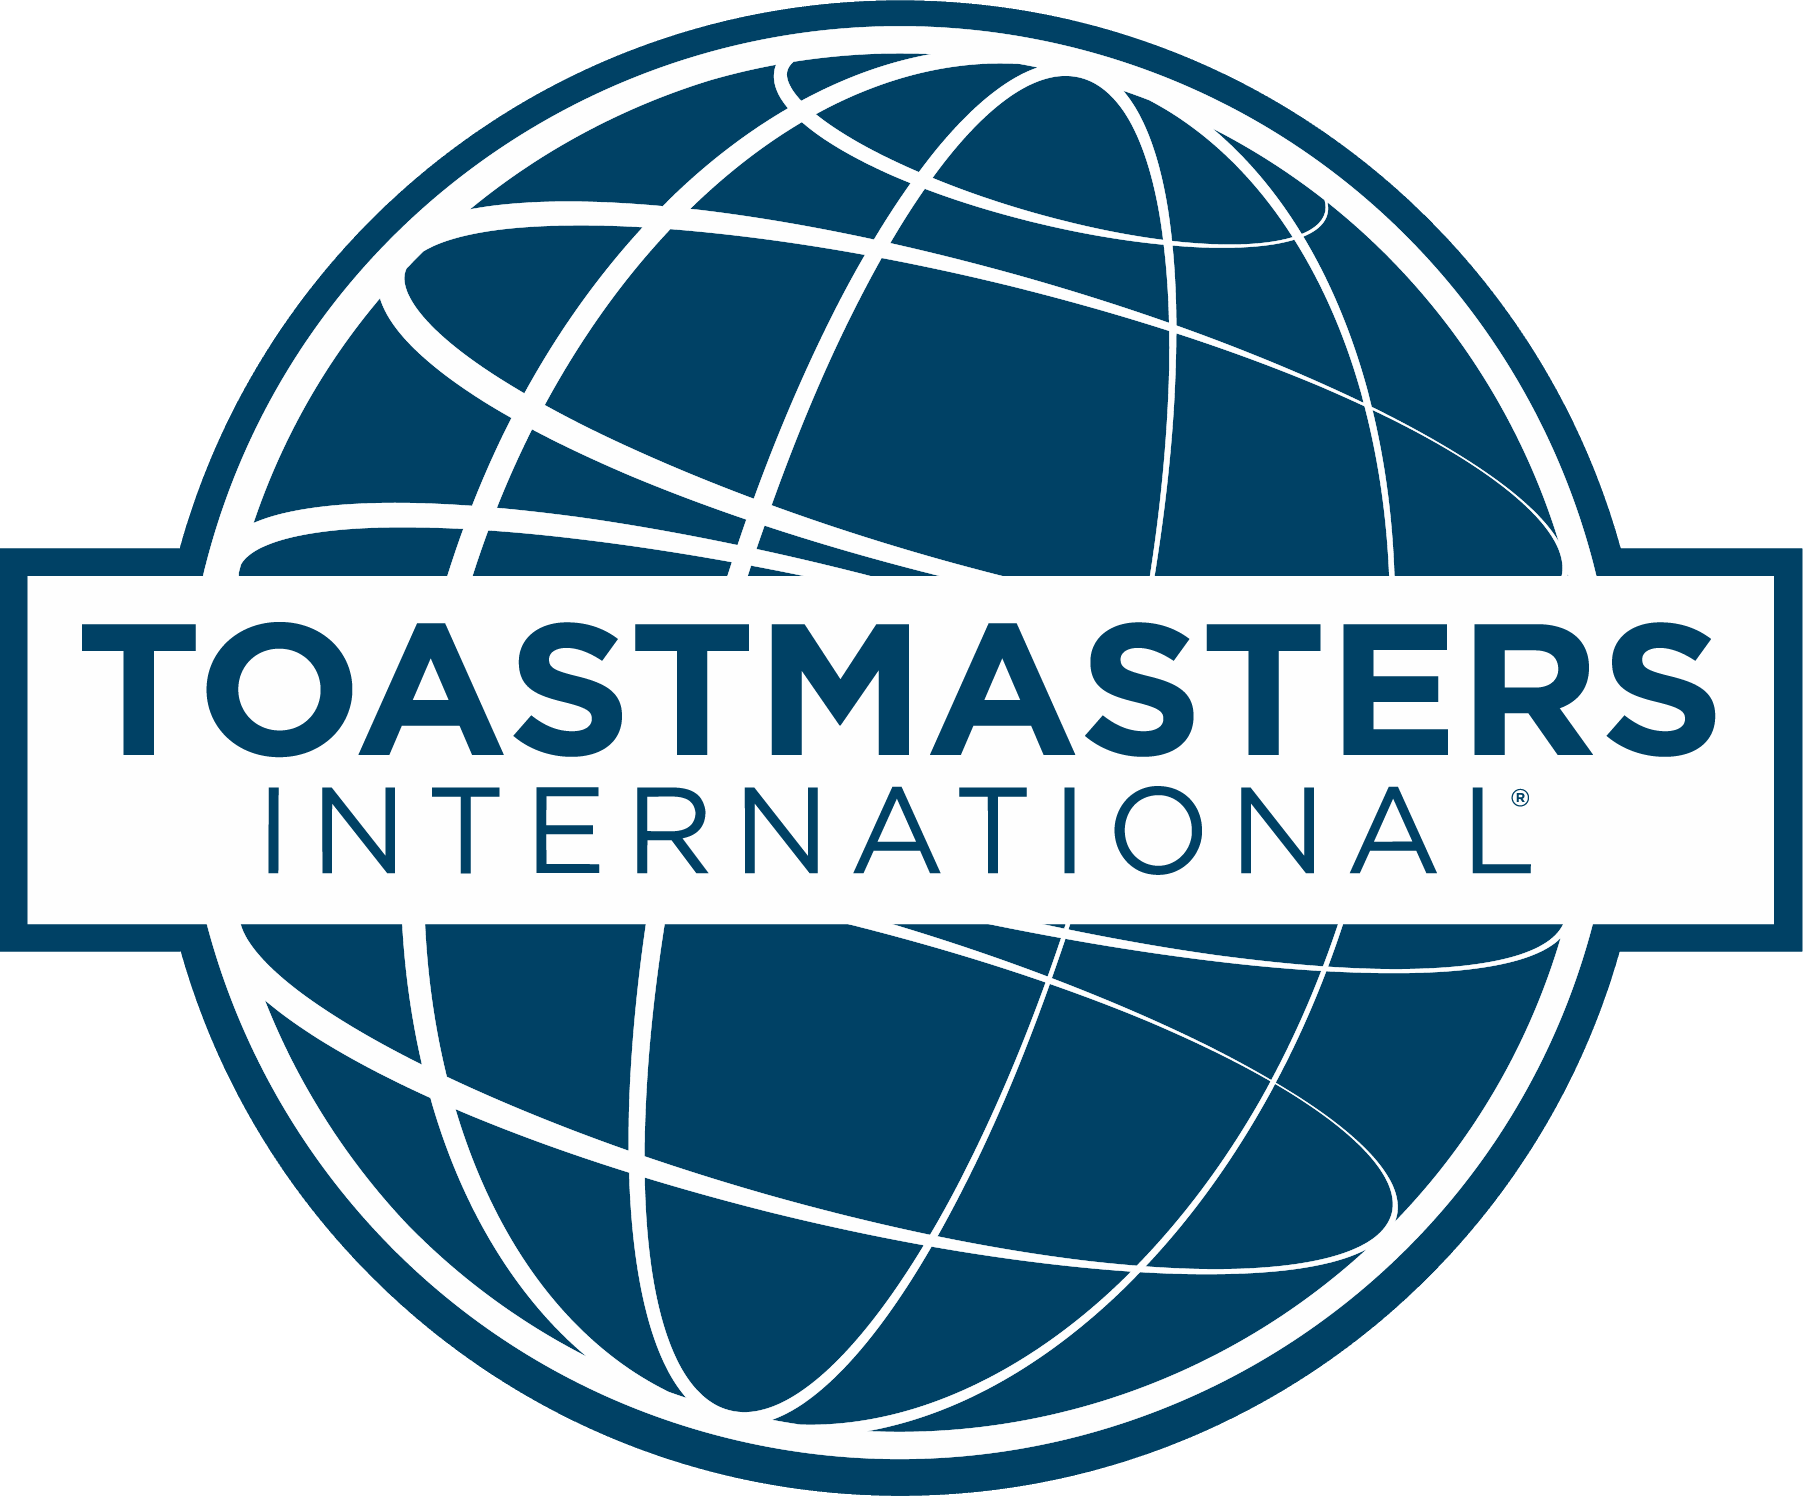 International Logo - Toastmasters International -Logo and Design Elements